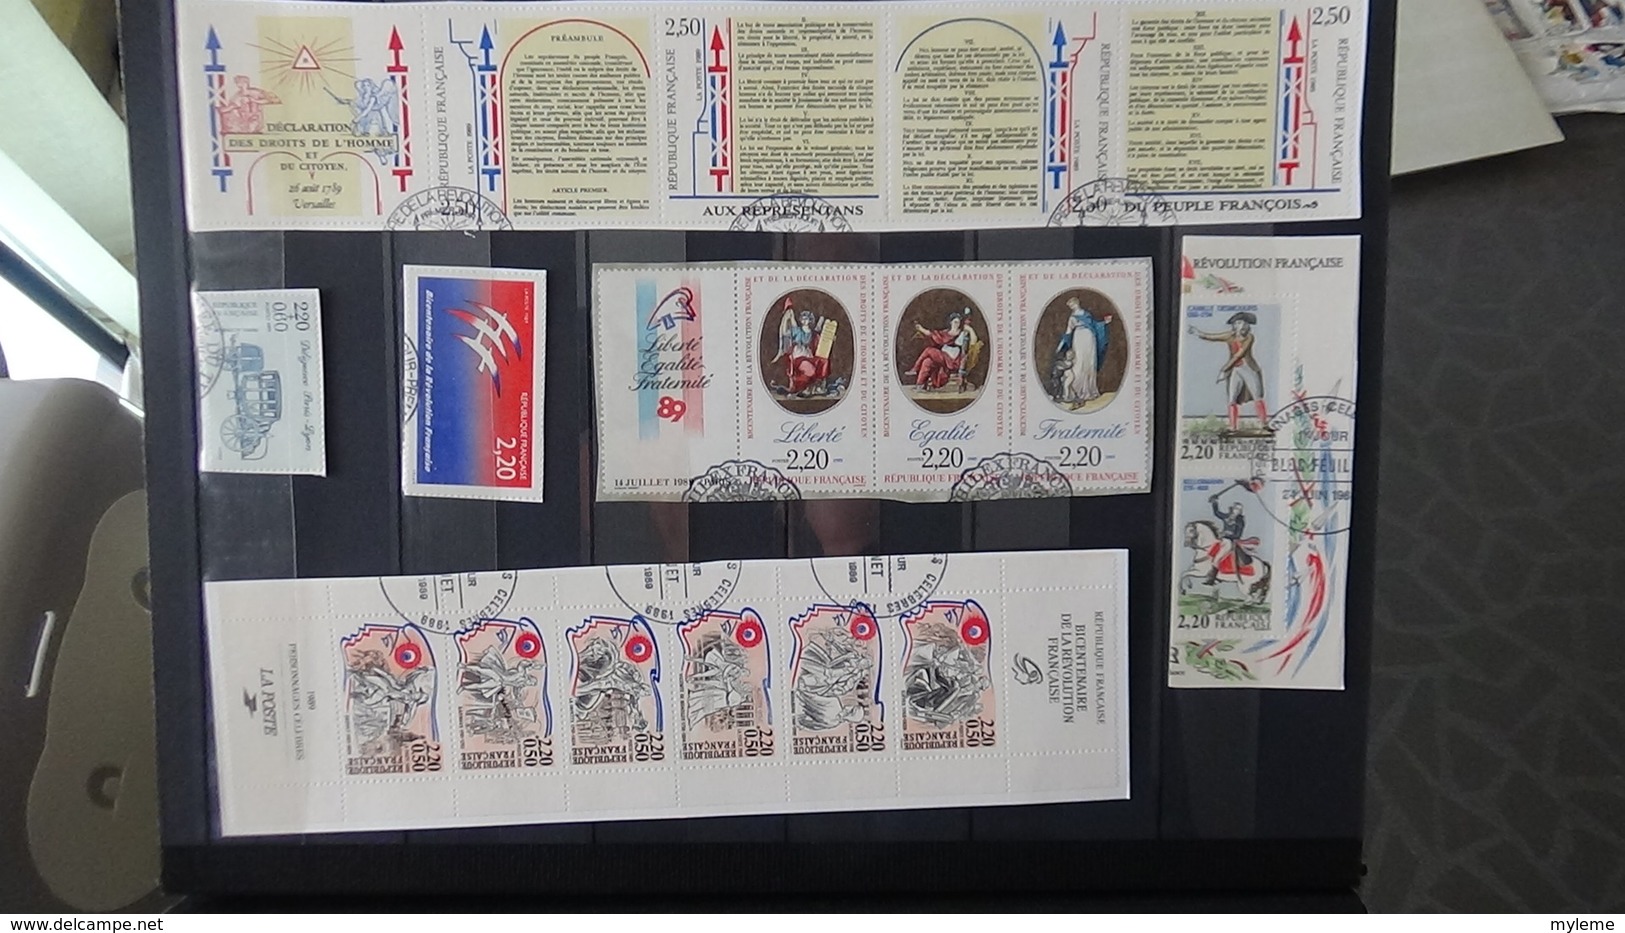 Bon lot de timbres et blocs avec oblitération 1er de France et quelques fin de catalogue aérogrammes .... A saisir !!!